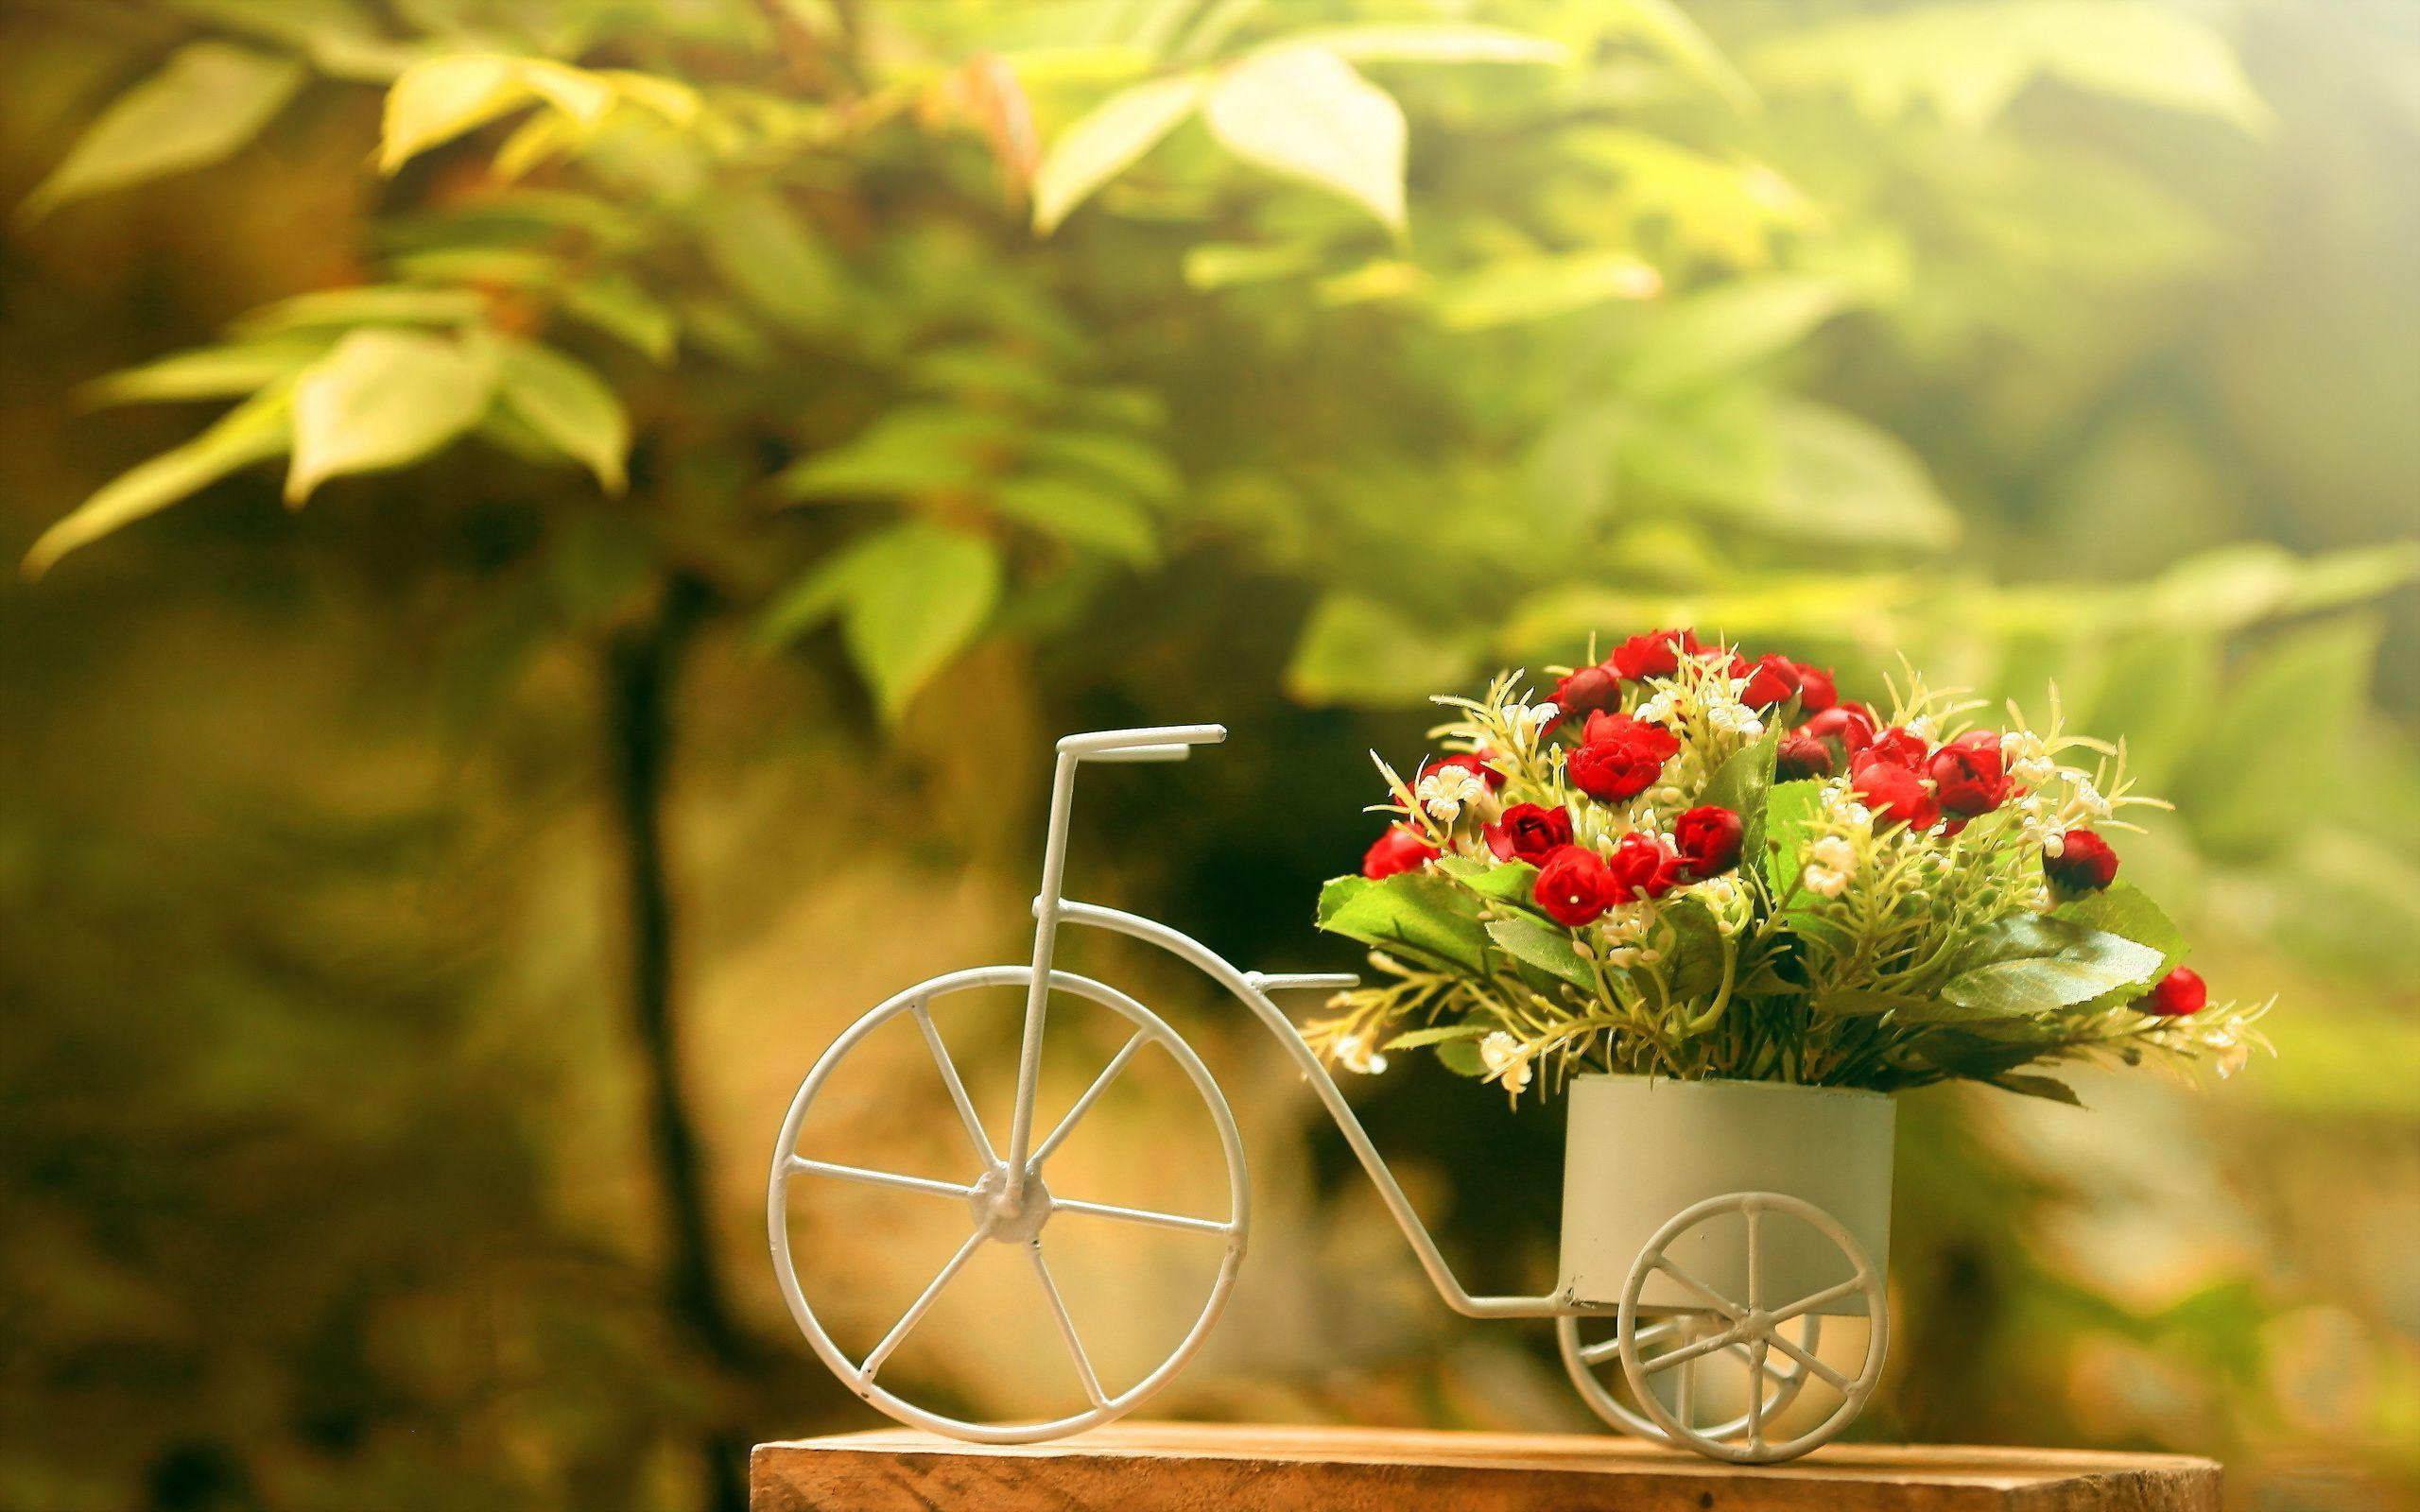 Bike flower pot. Interior. Floral